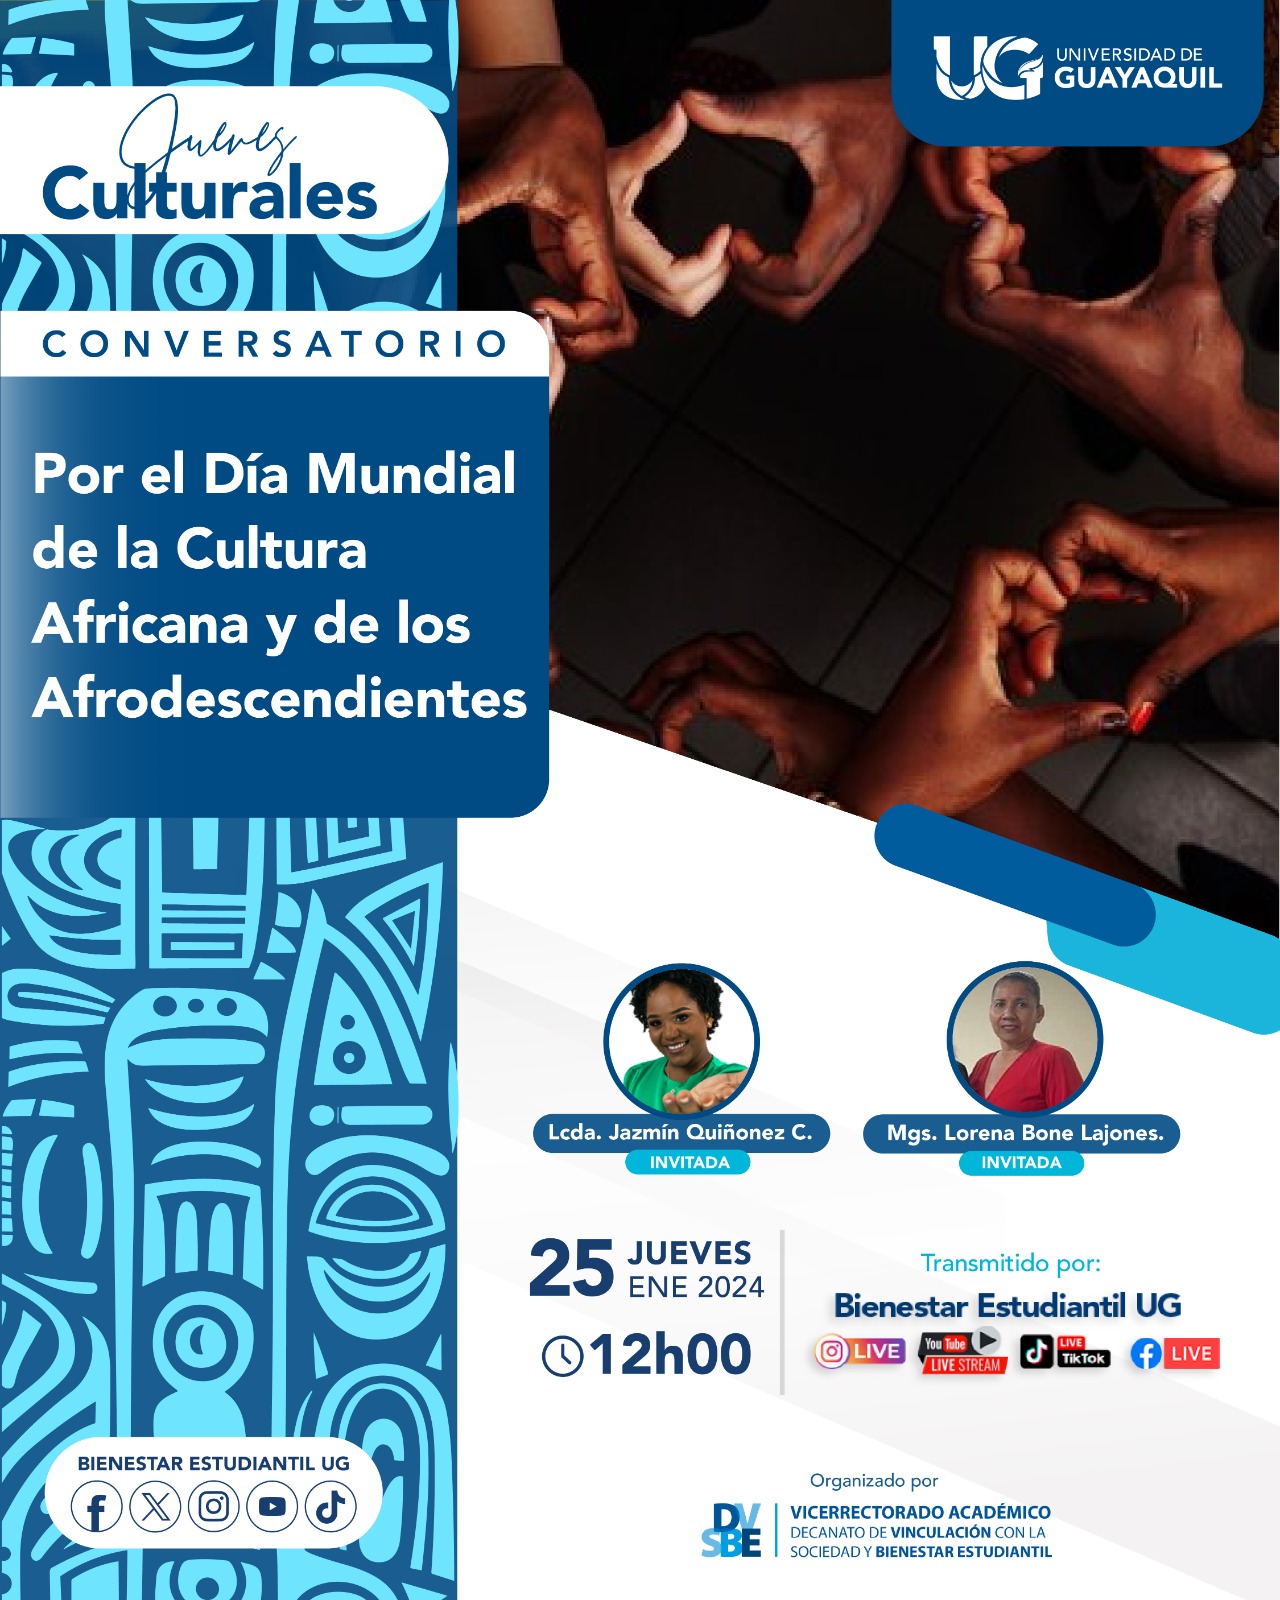 Jueves Culturales: Conversatorio por el Día Mundial de la Cultura Africana y de los afrodescendientes